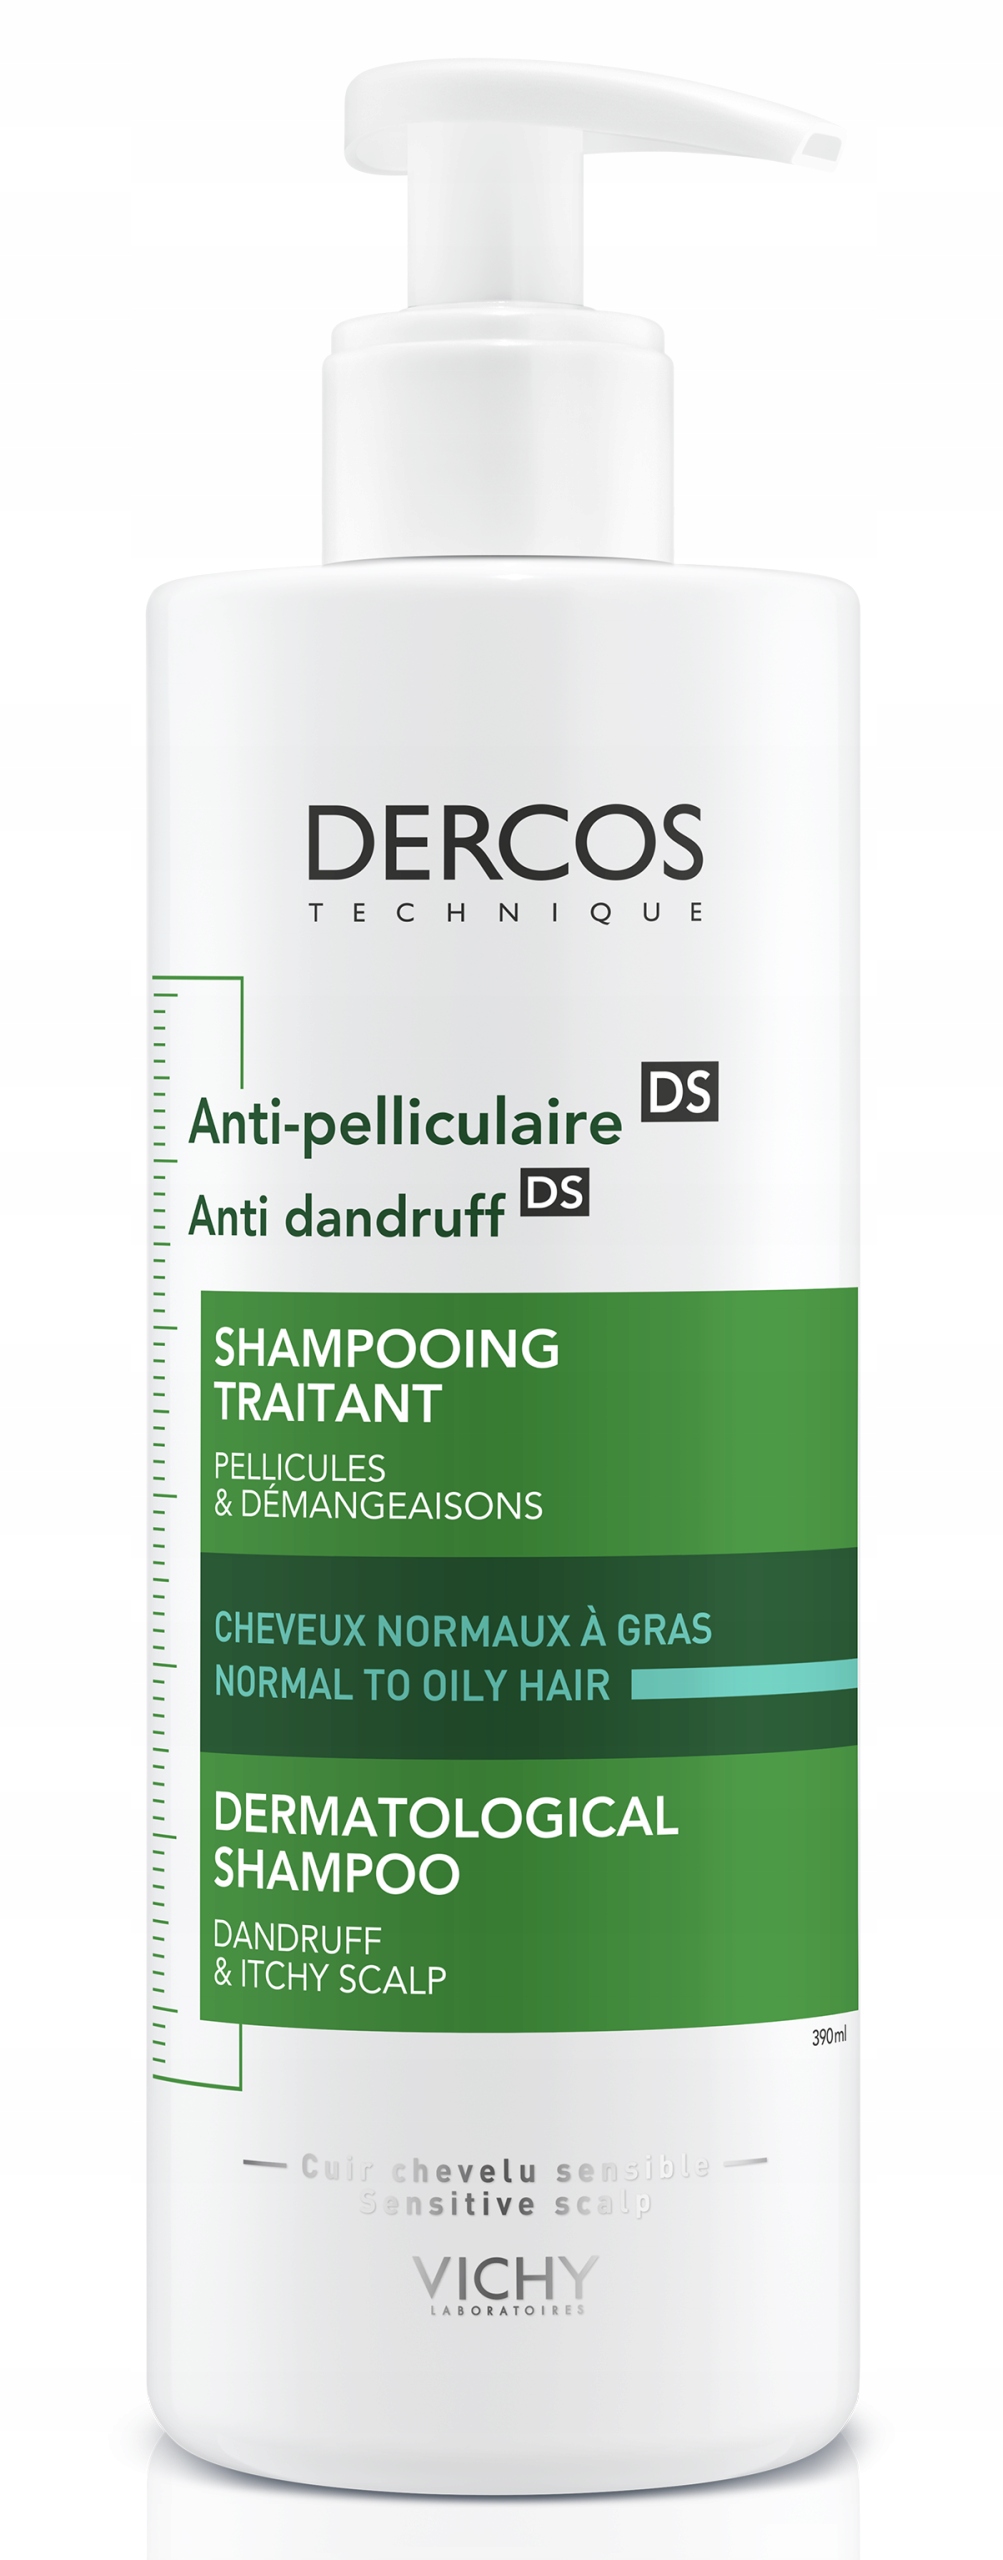 vichy dercos szampon przeciw wypadaniu włosów opinie